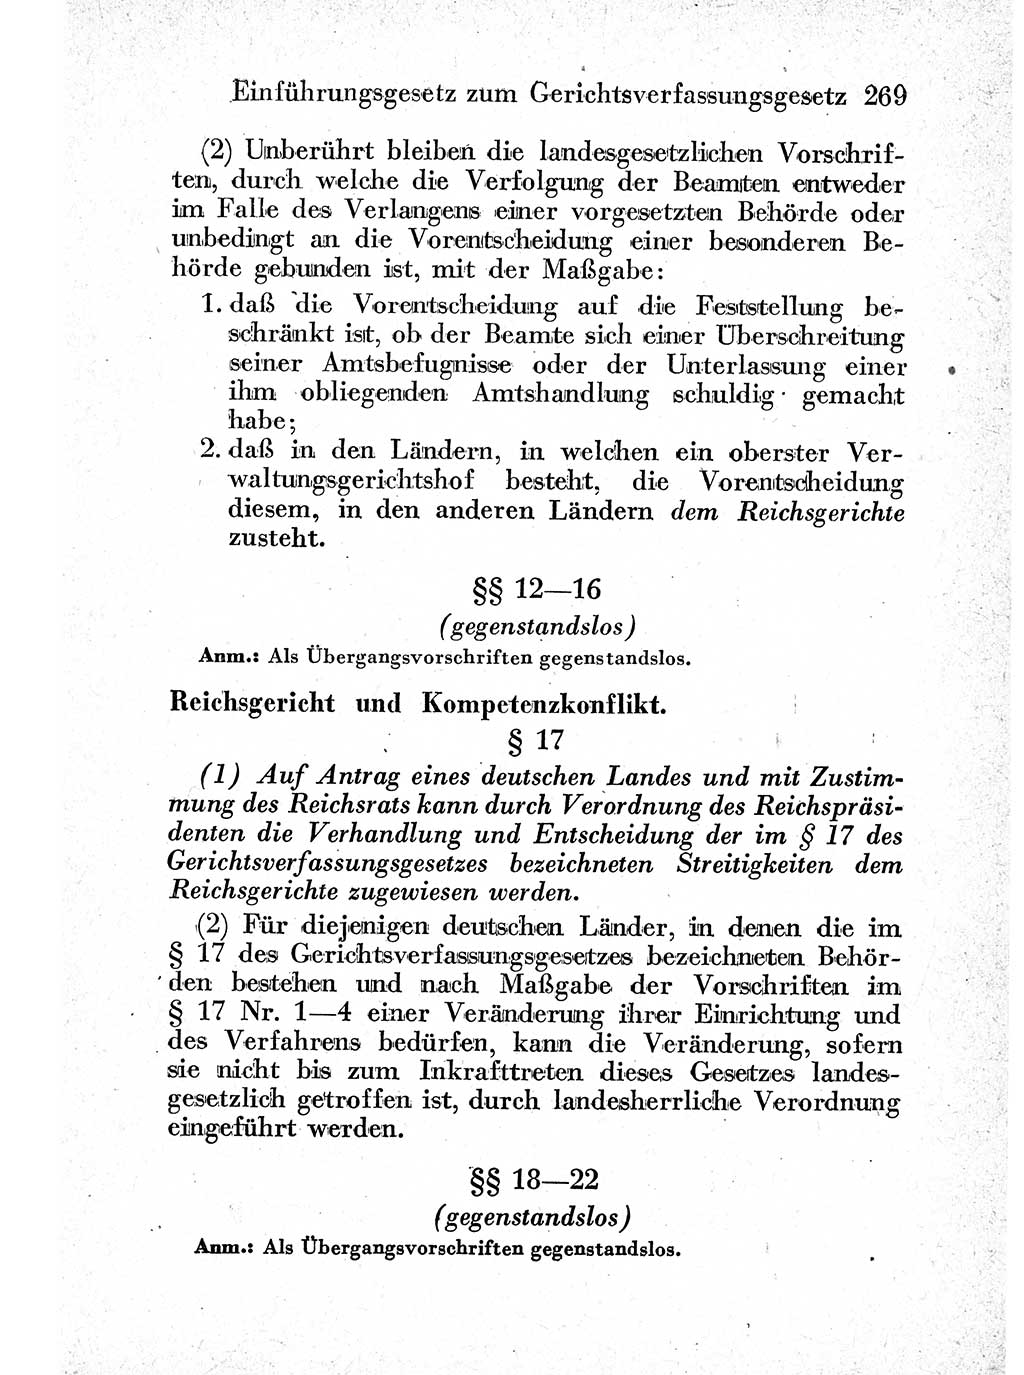 Strafprozeßordnung (StPO), Gerichtsverfassungsgesetz (GVG) und zahlreiche Nebengesetze der sowjetischen Besatzungszone (SBZ) in Deutschland 1949, Seite 269 (StPO GVG Ges. SBZ Dtl. 1949, S. 269)